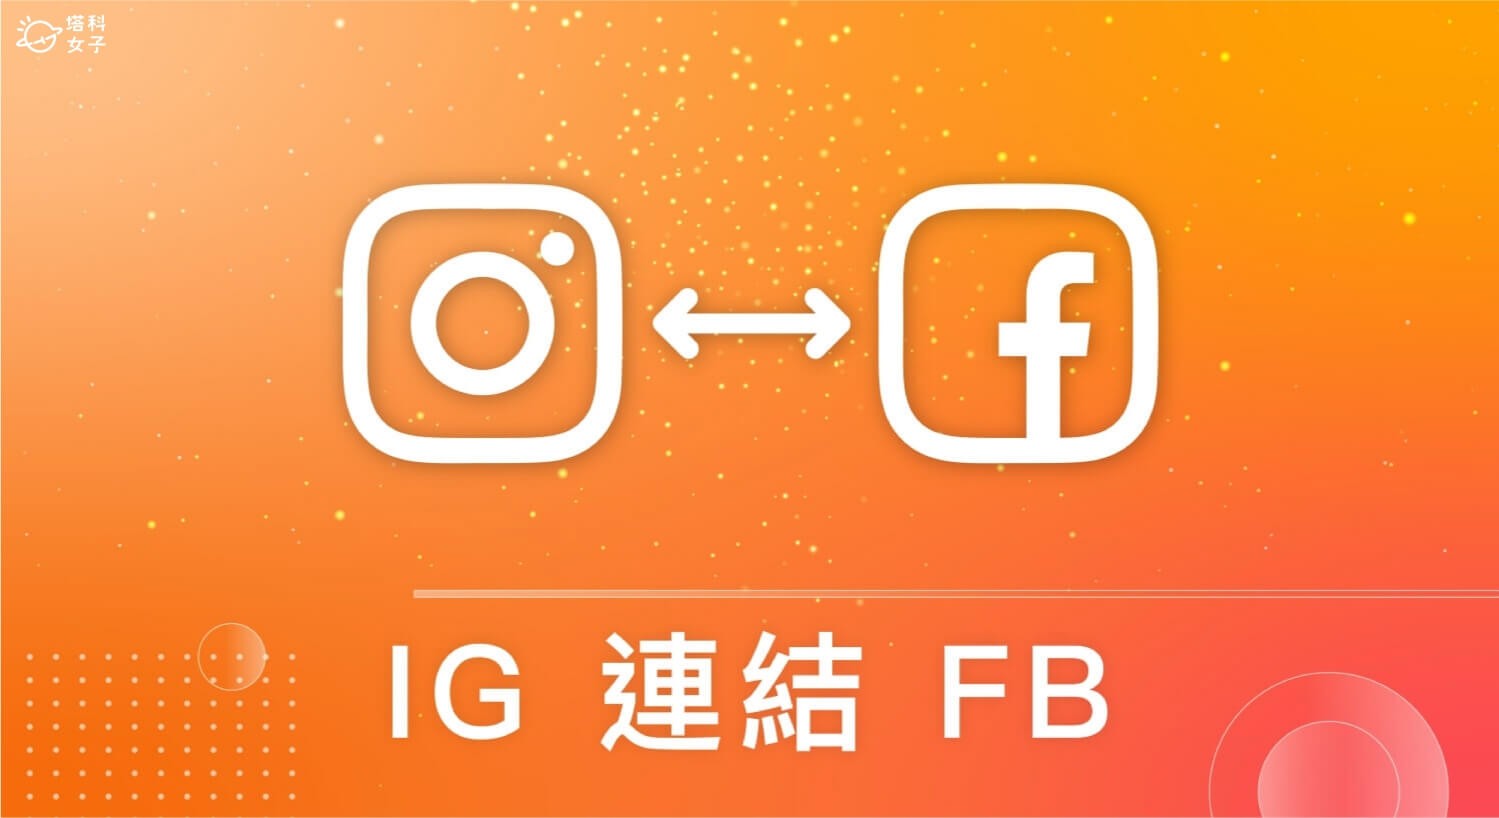 IG FB 連結教學：連結個人帳號或粉專，同步發文及集中管理訊息